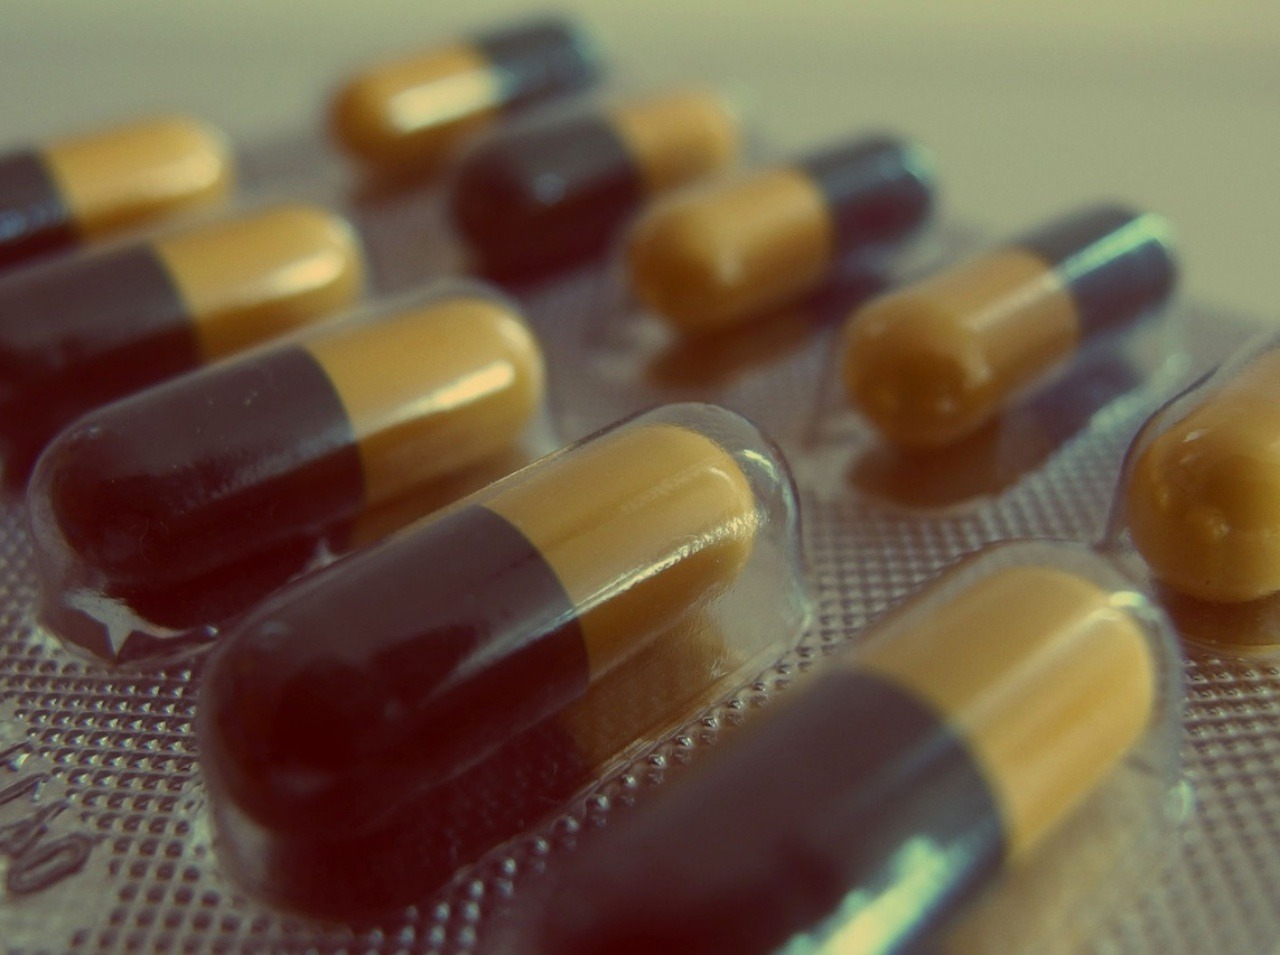 Dlhodobé užívanie antibiotík narúša črevnú mikroflóru.